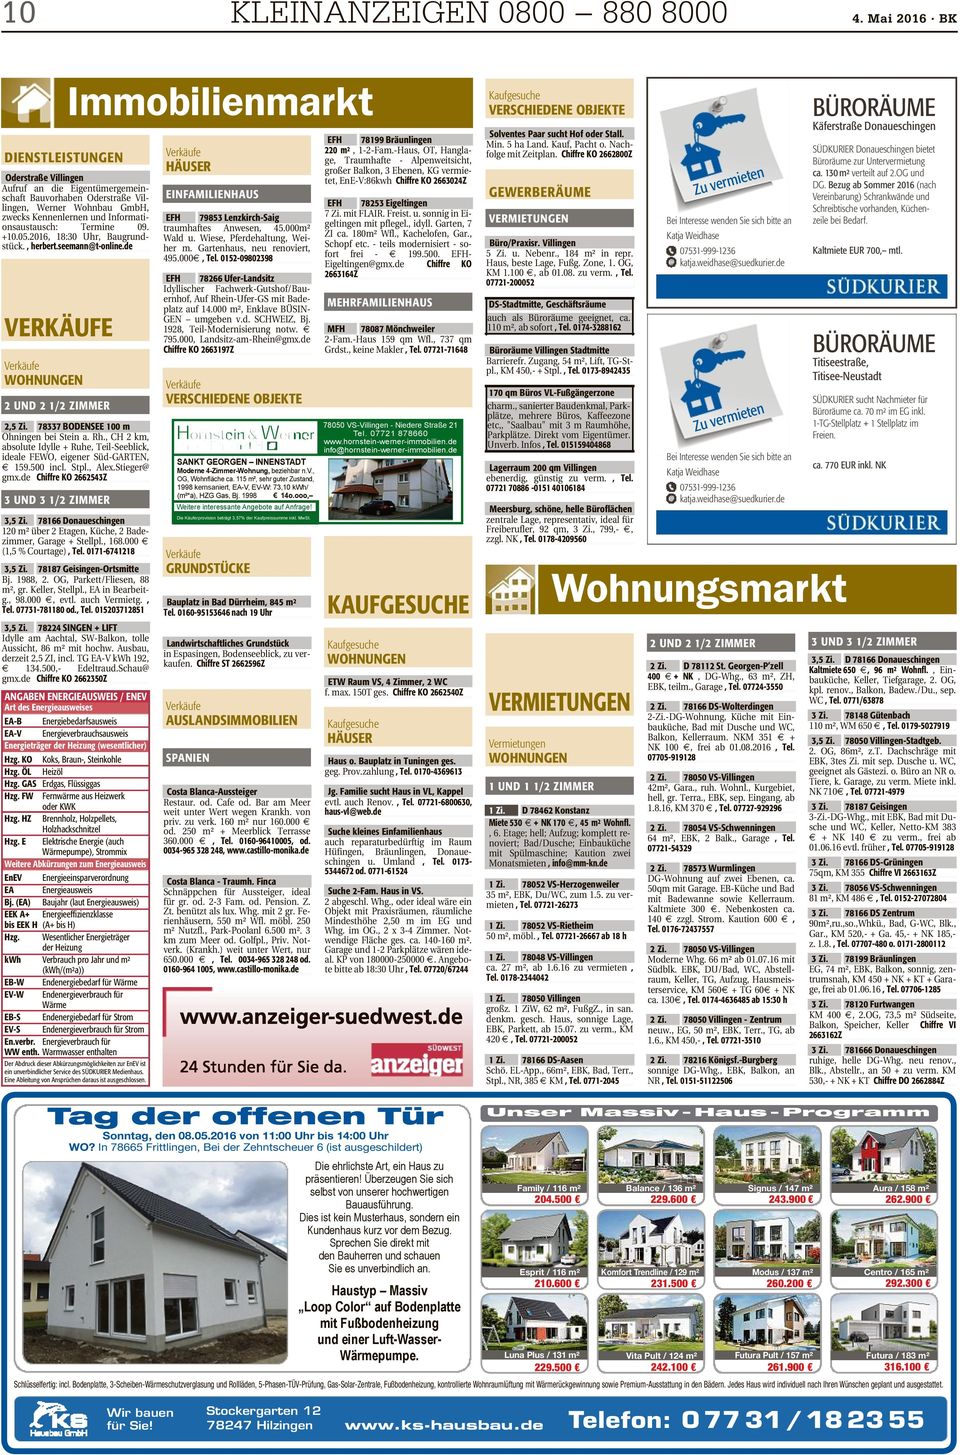 BK Immobilienmarkt DIENSTLEISTUNGEN Oderstraße Villingen Aufruf an die Eigentümergemeinschaft Bauvorhaben Oderstraße Villingen, Werner Wohnbau GmbH, zwecks Kennenlernen und Informationsaustausch: